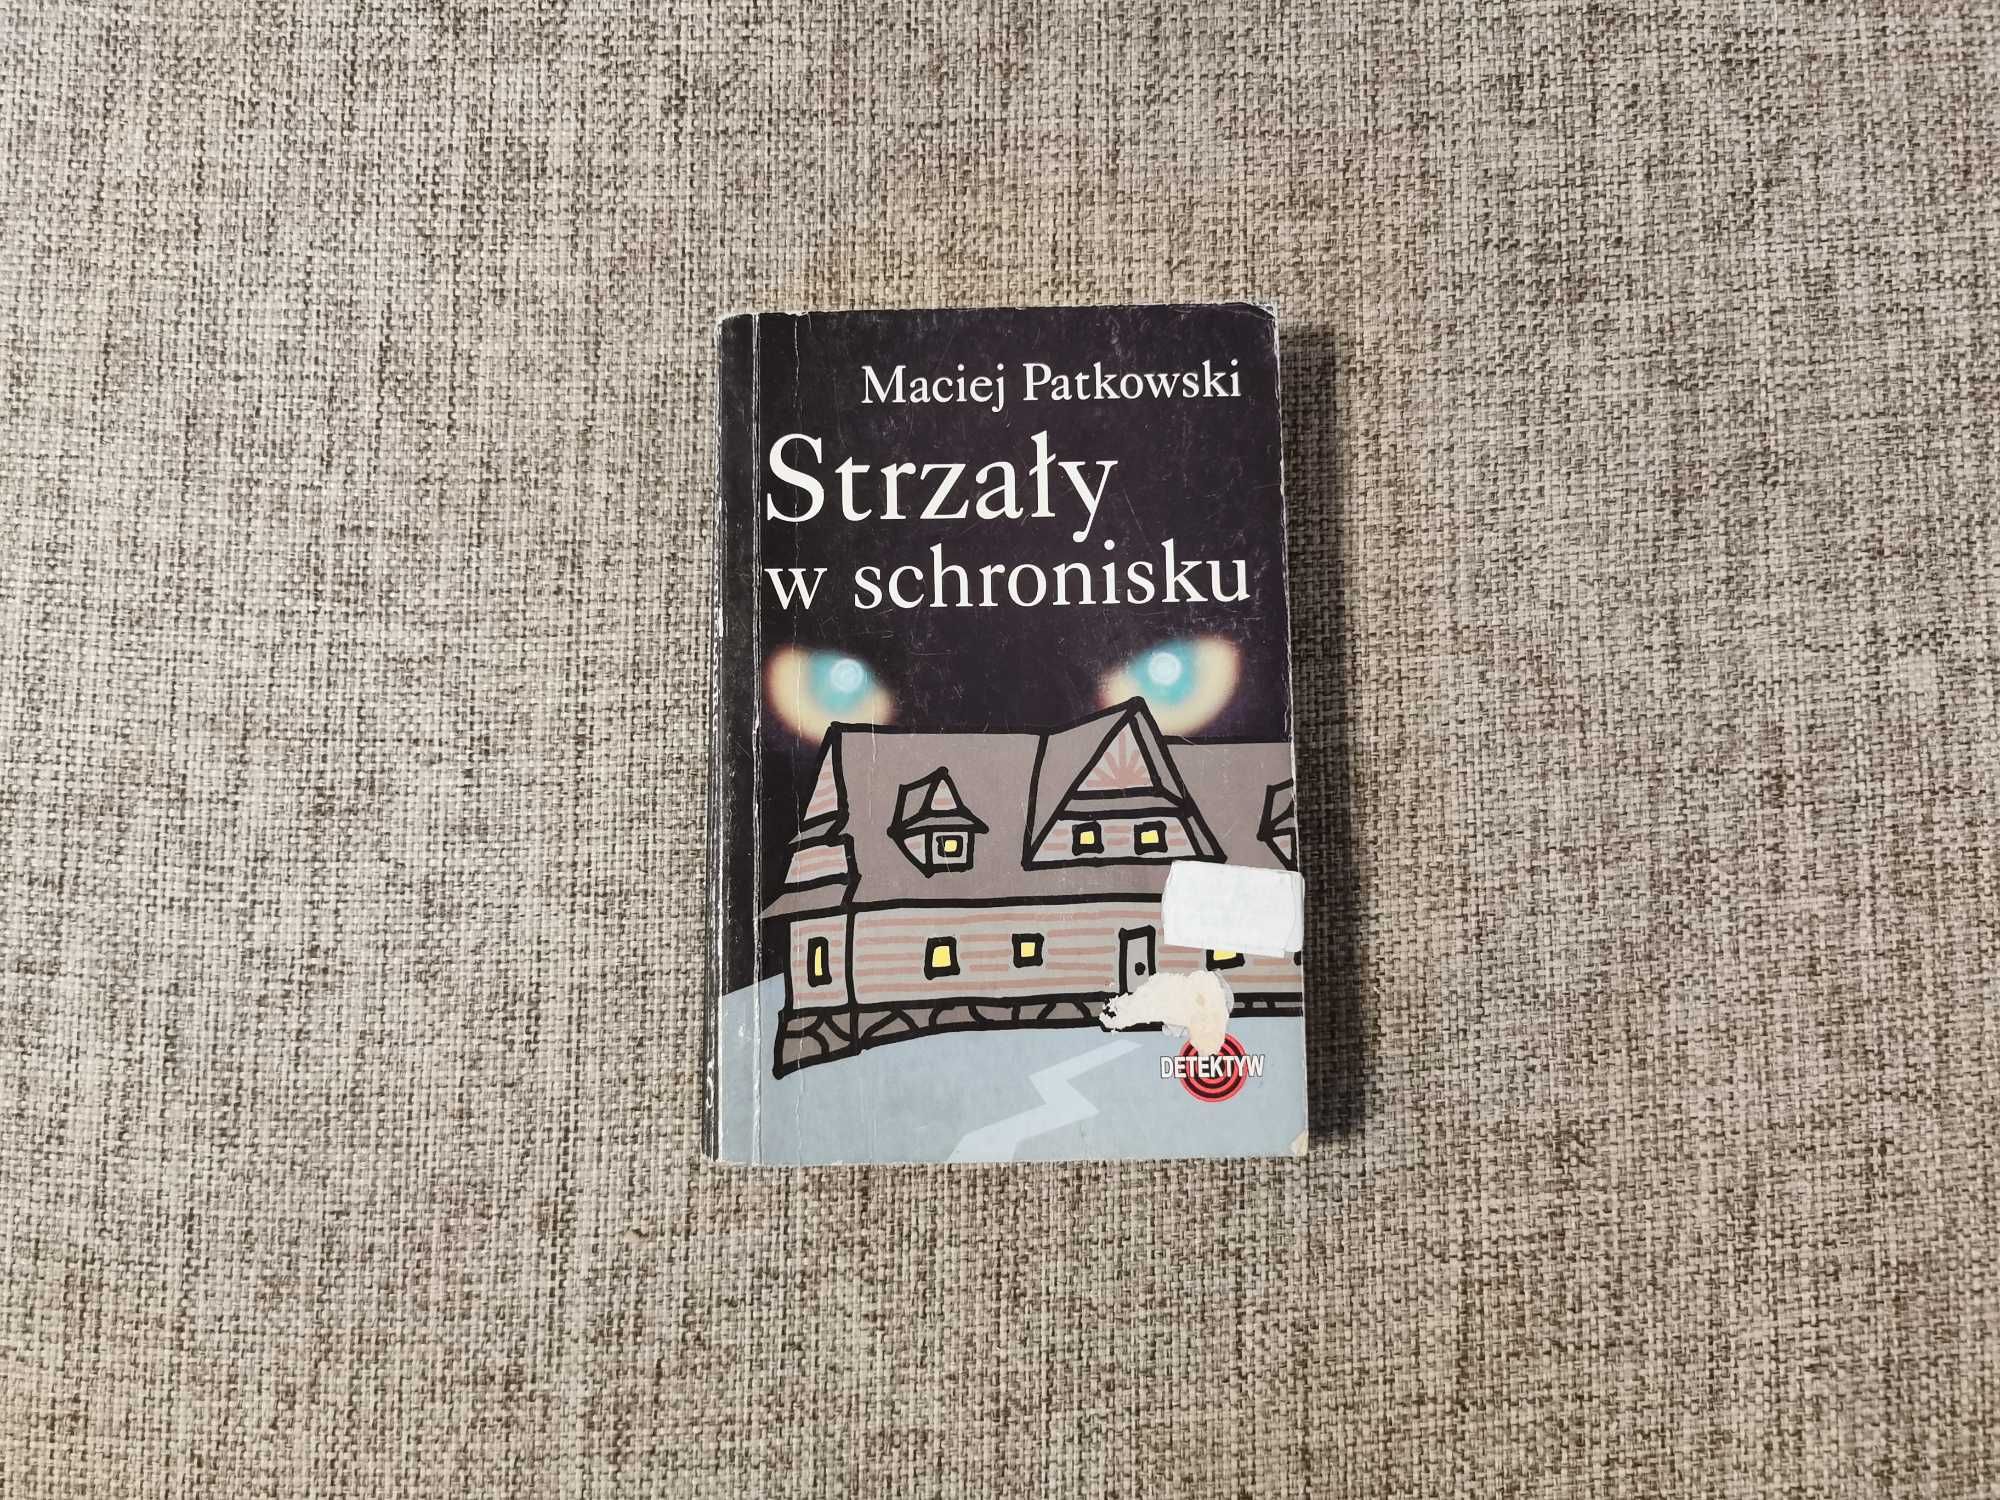 Maciej Patkowski - Strzały w schronisku